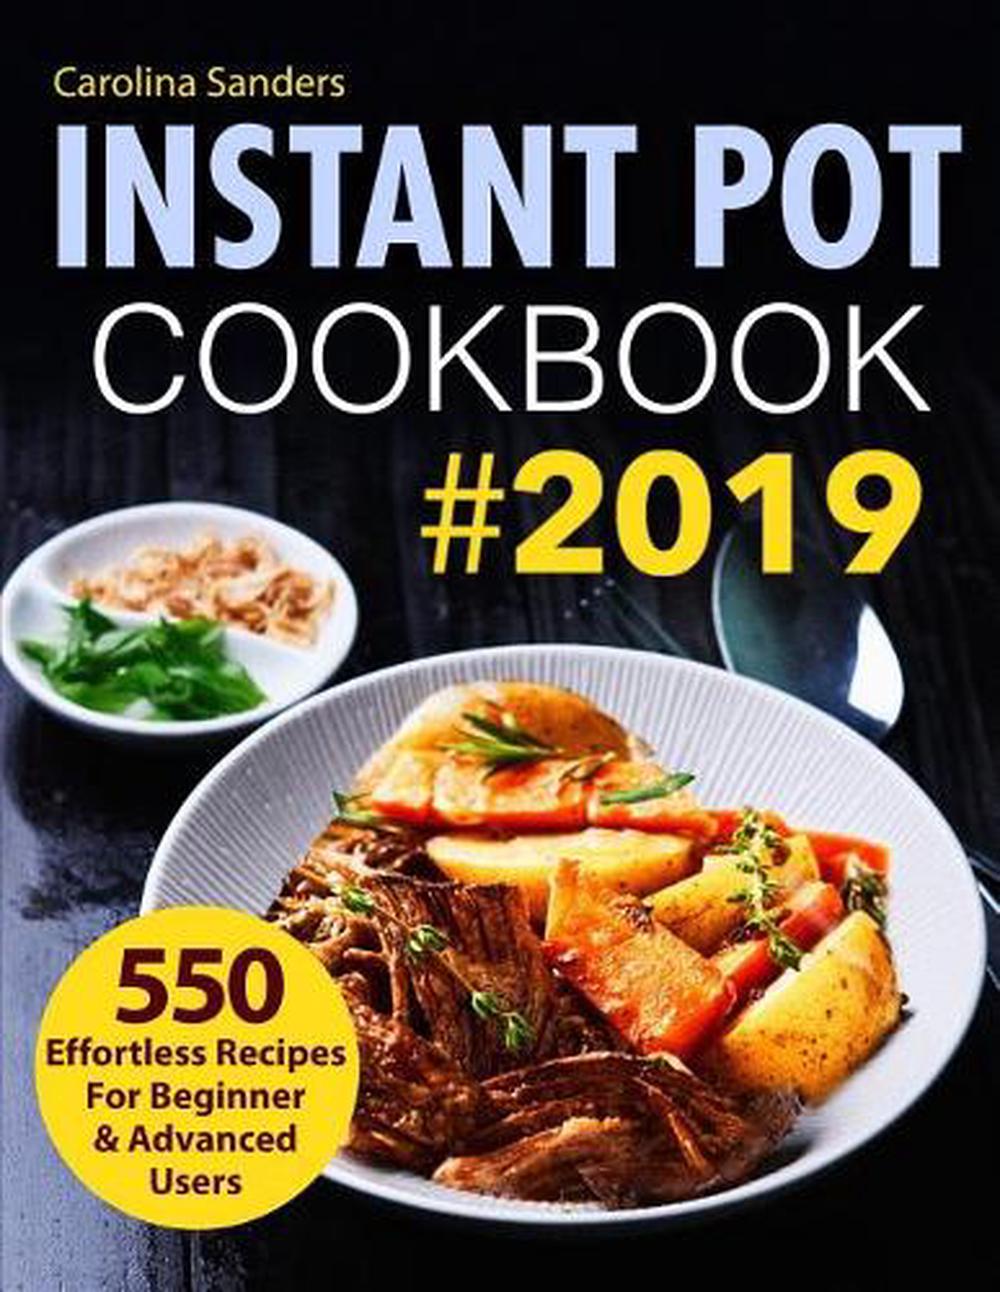 Instant Pot Cookbook #2019: 550 Effortless Recipes for Beginner ...